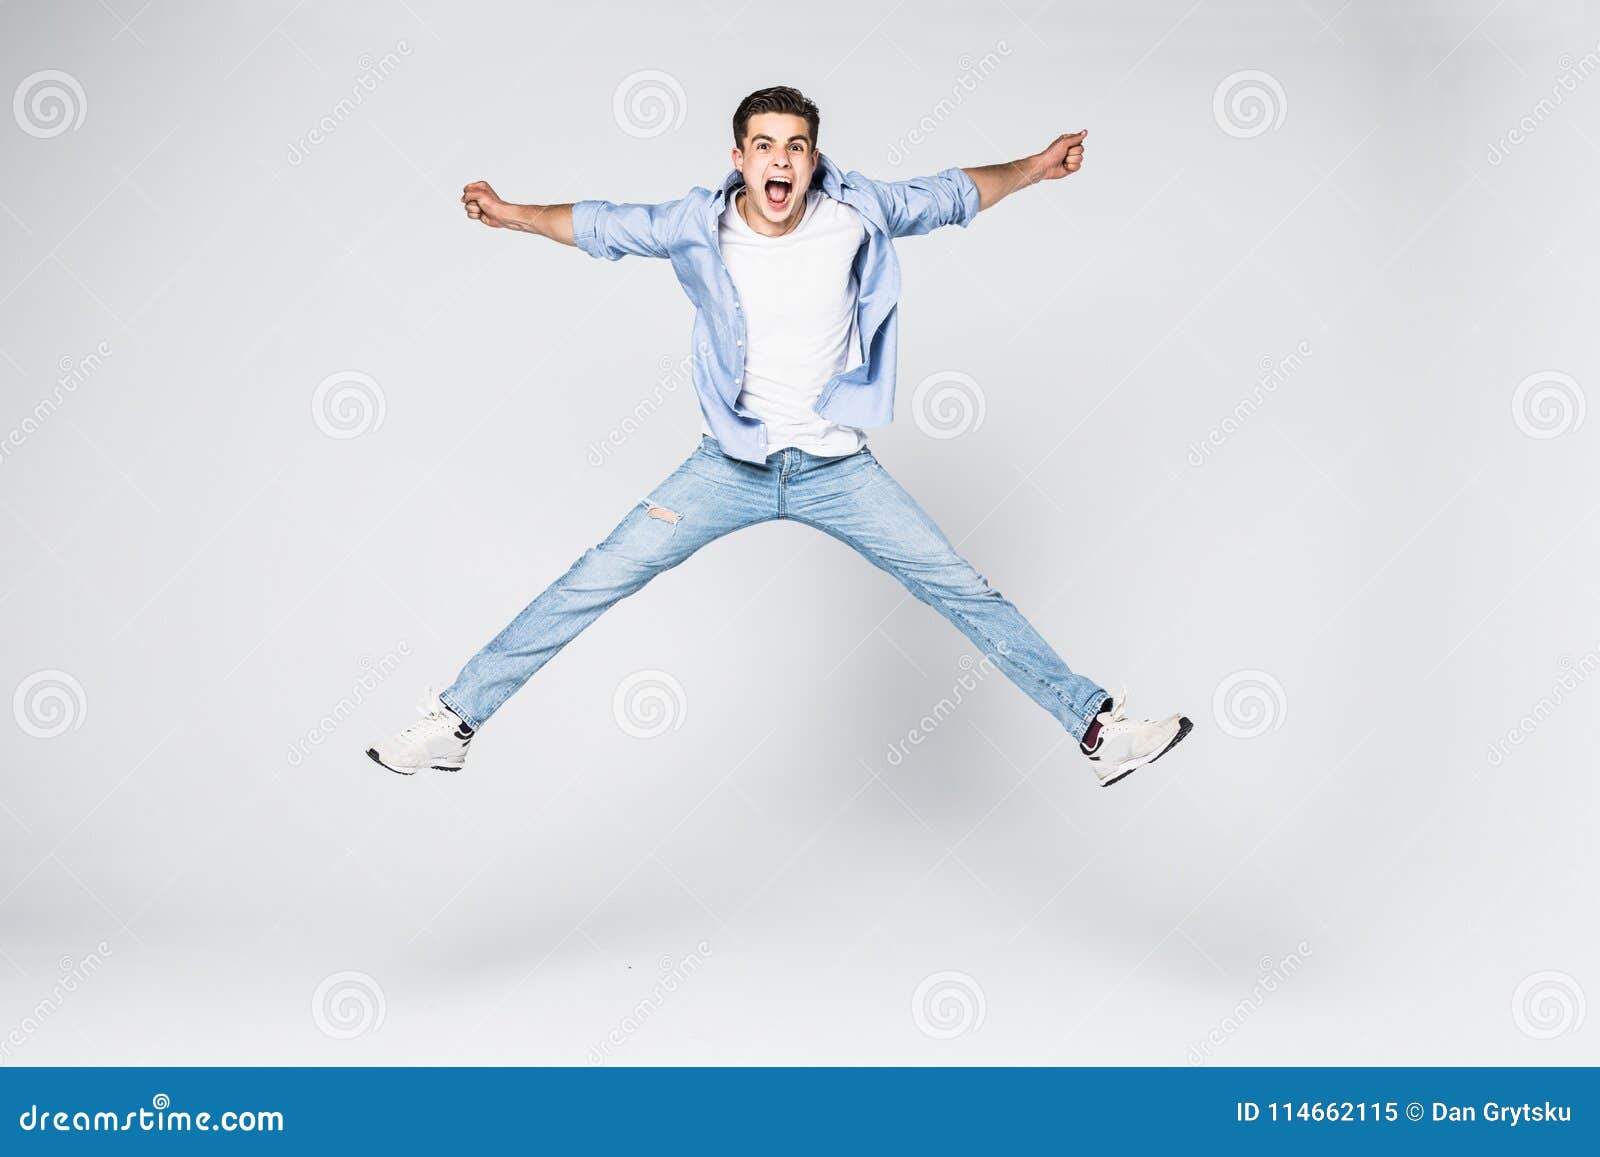 Smiling Joyful Man Jumping on White Background. Stock Image - Image of ...